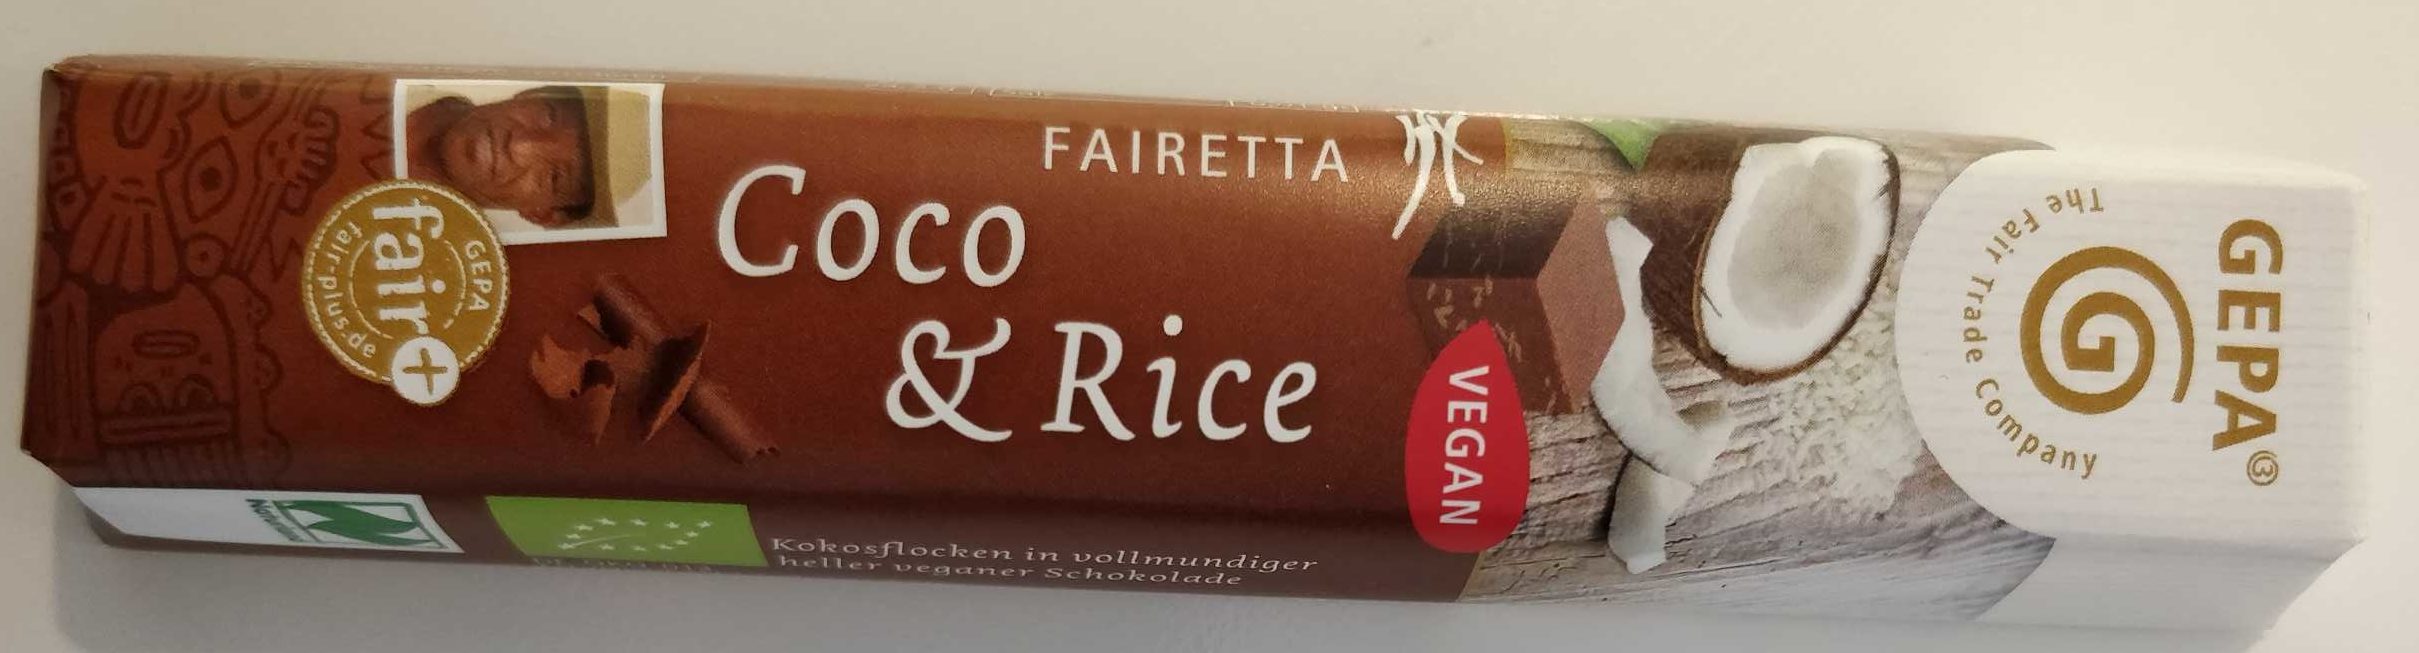 Fairetta Coco & Rice - Produkt